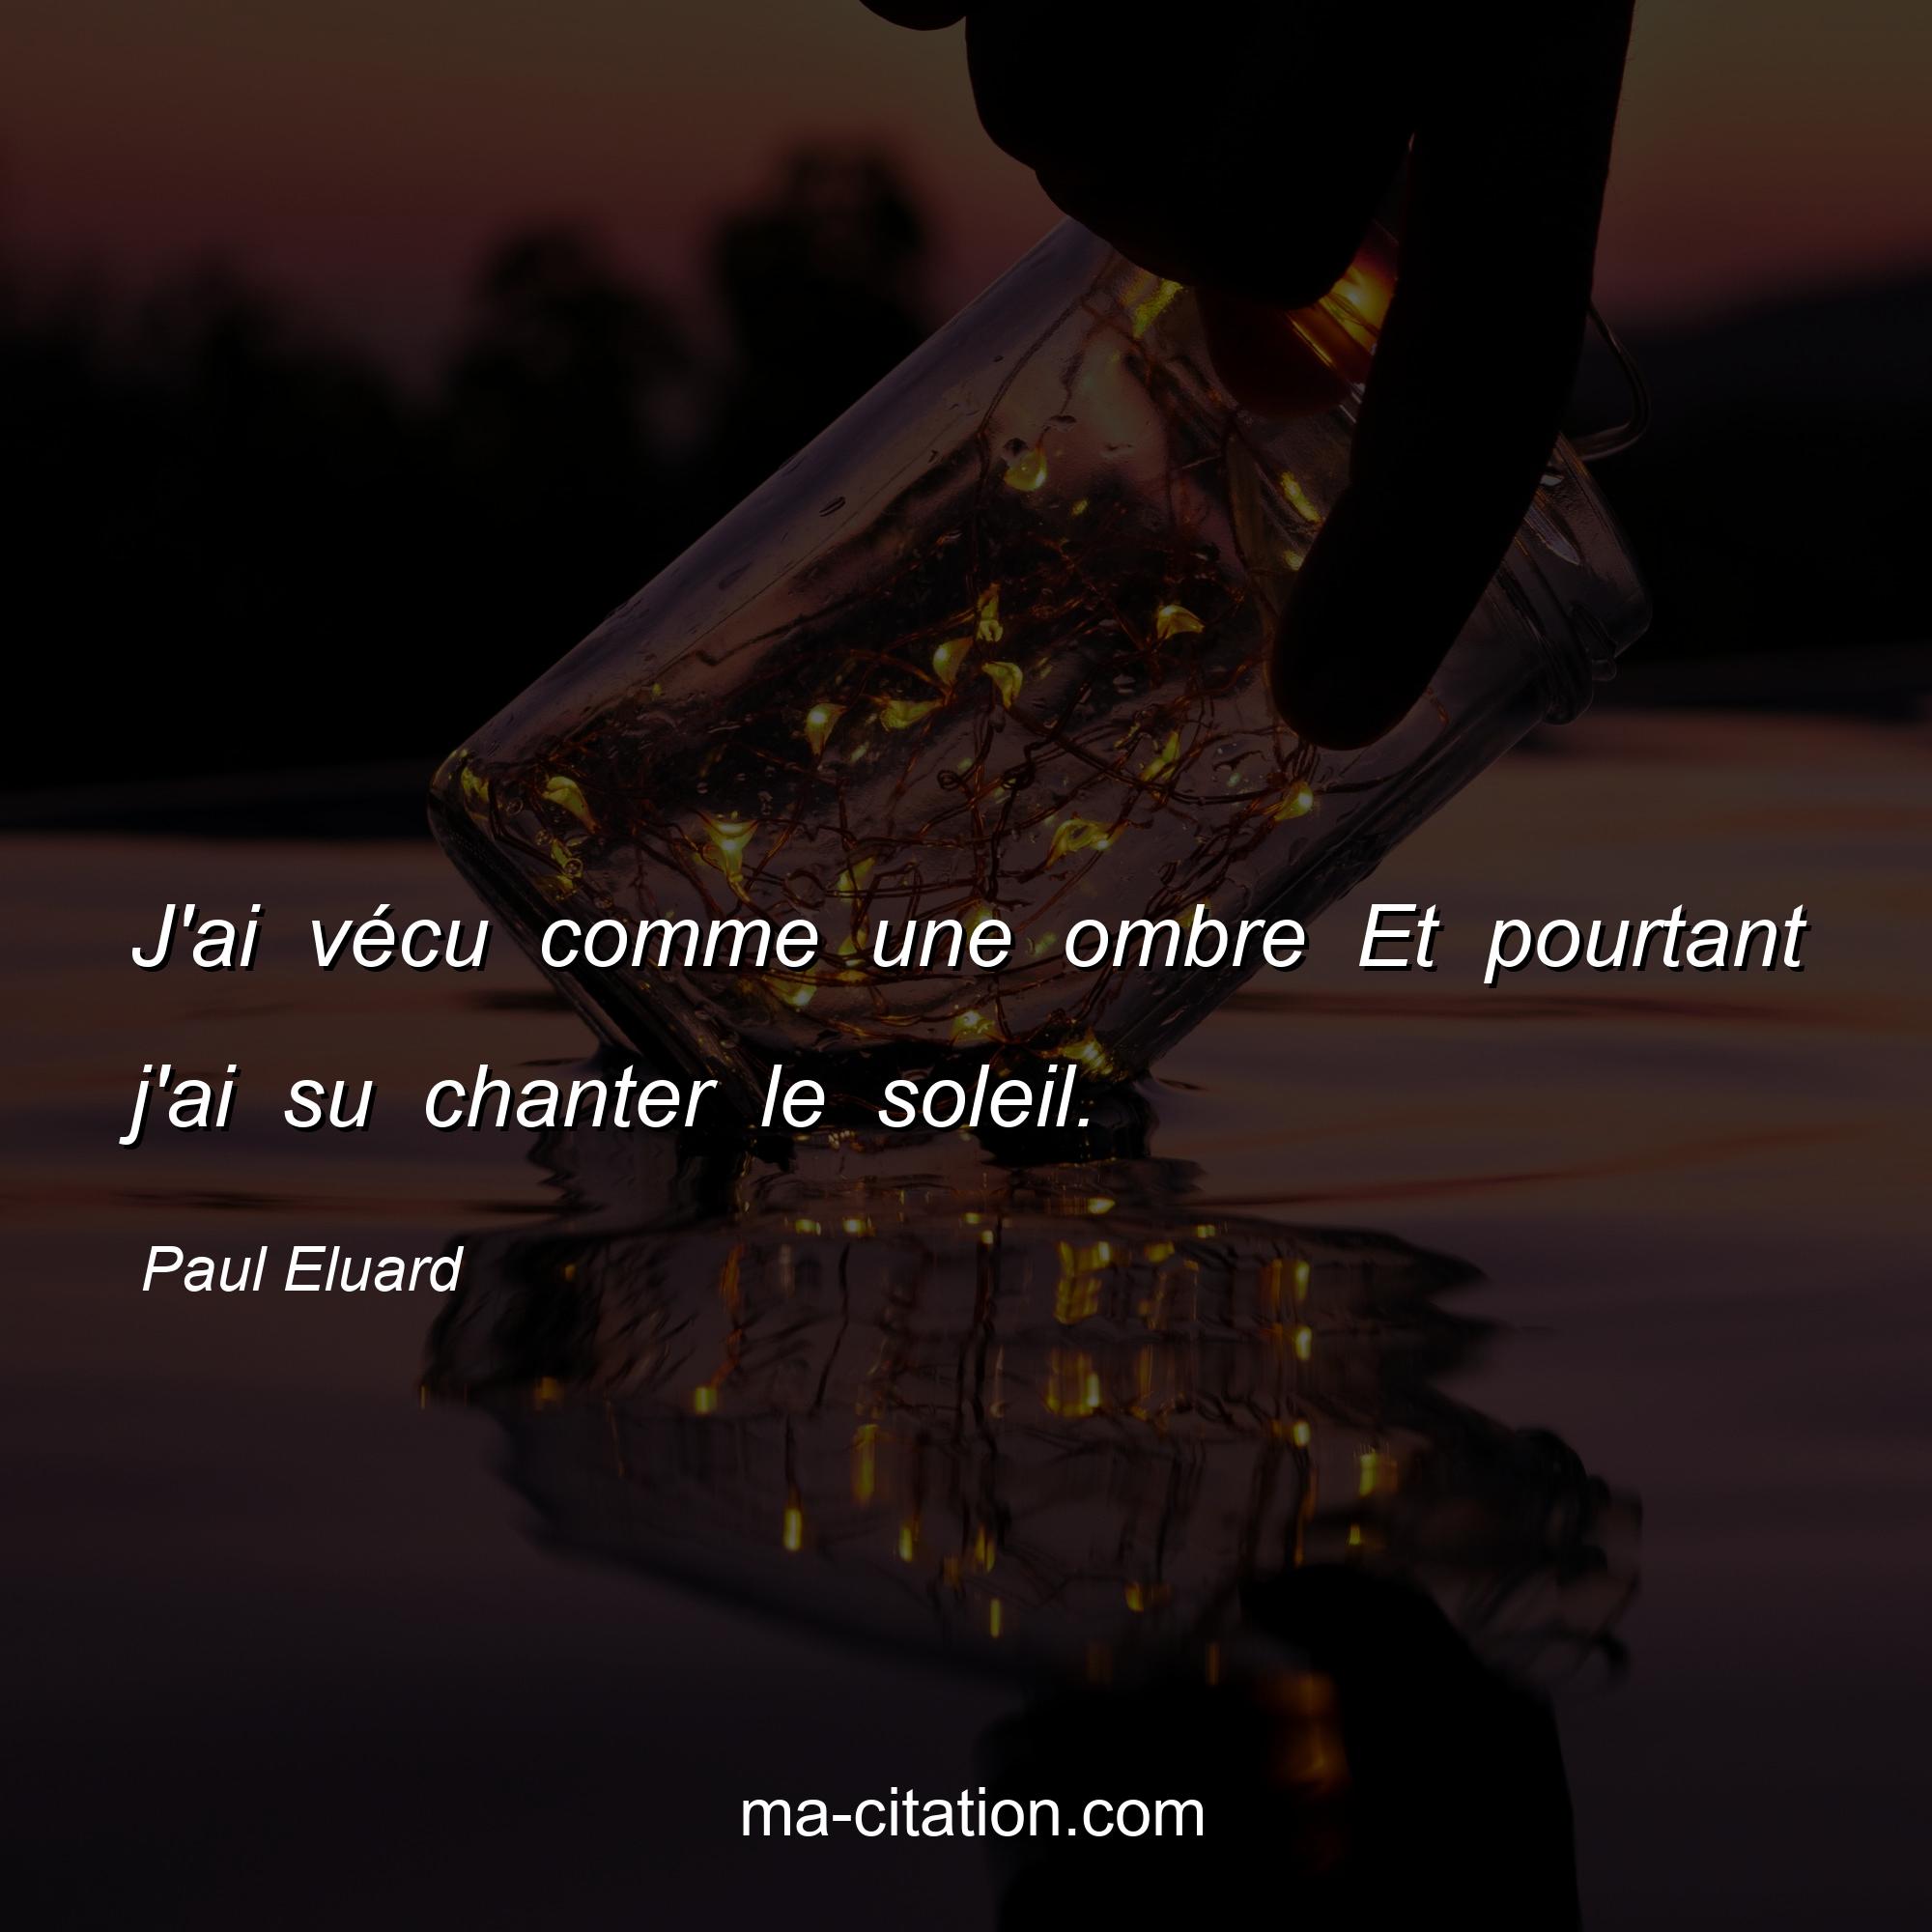 Paul Eluard : J'ai vécu comme une ombre Et pourtant j'ai su chanter le soleil.